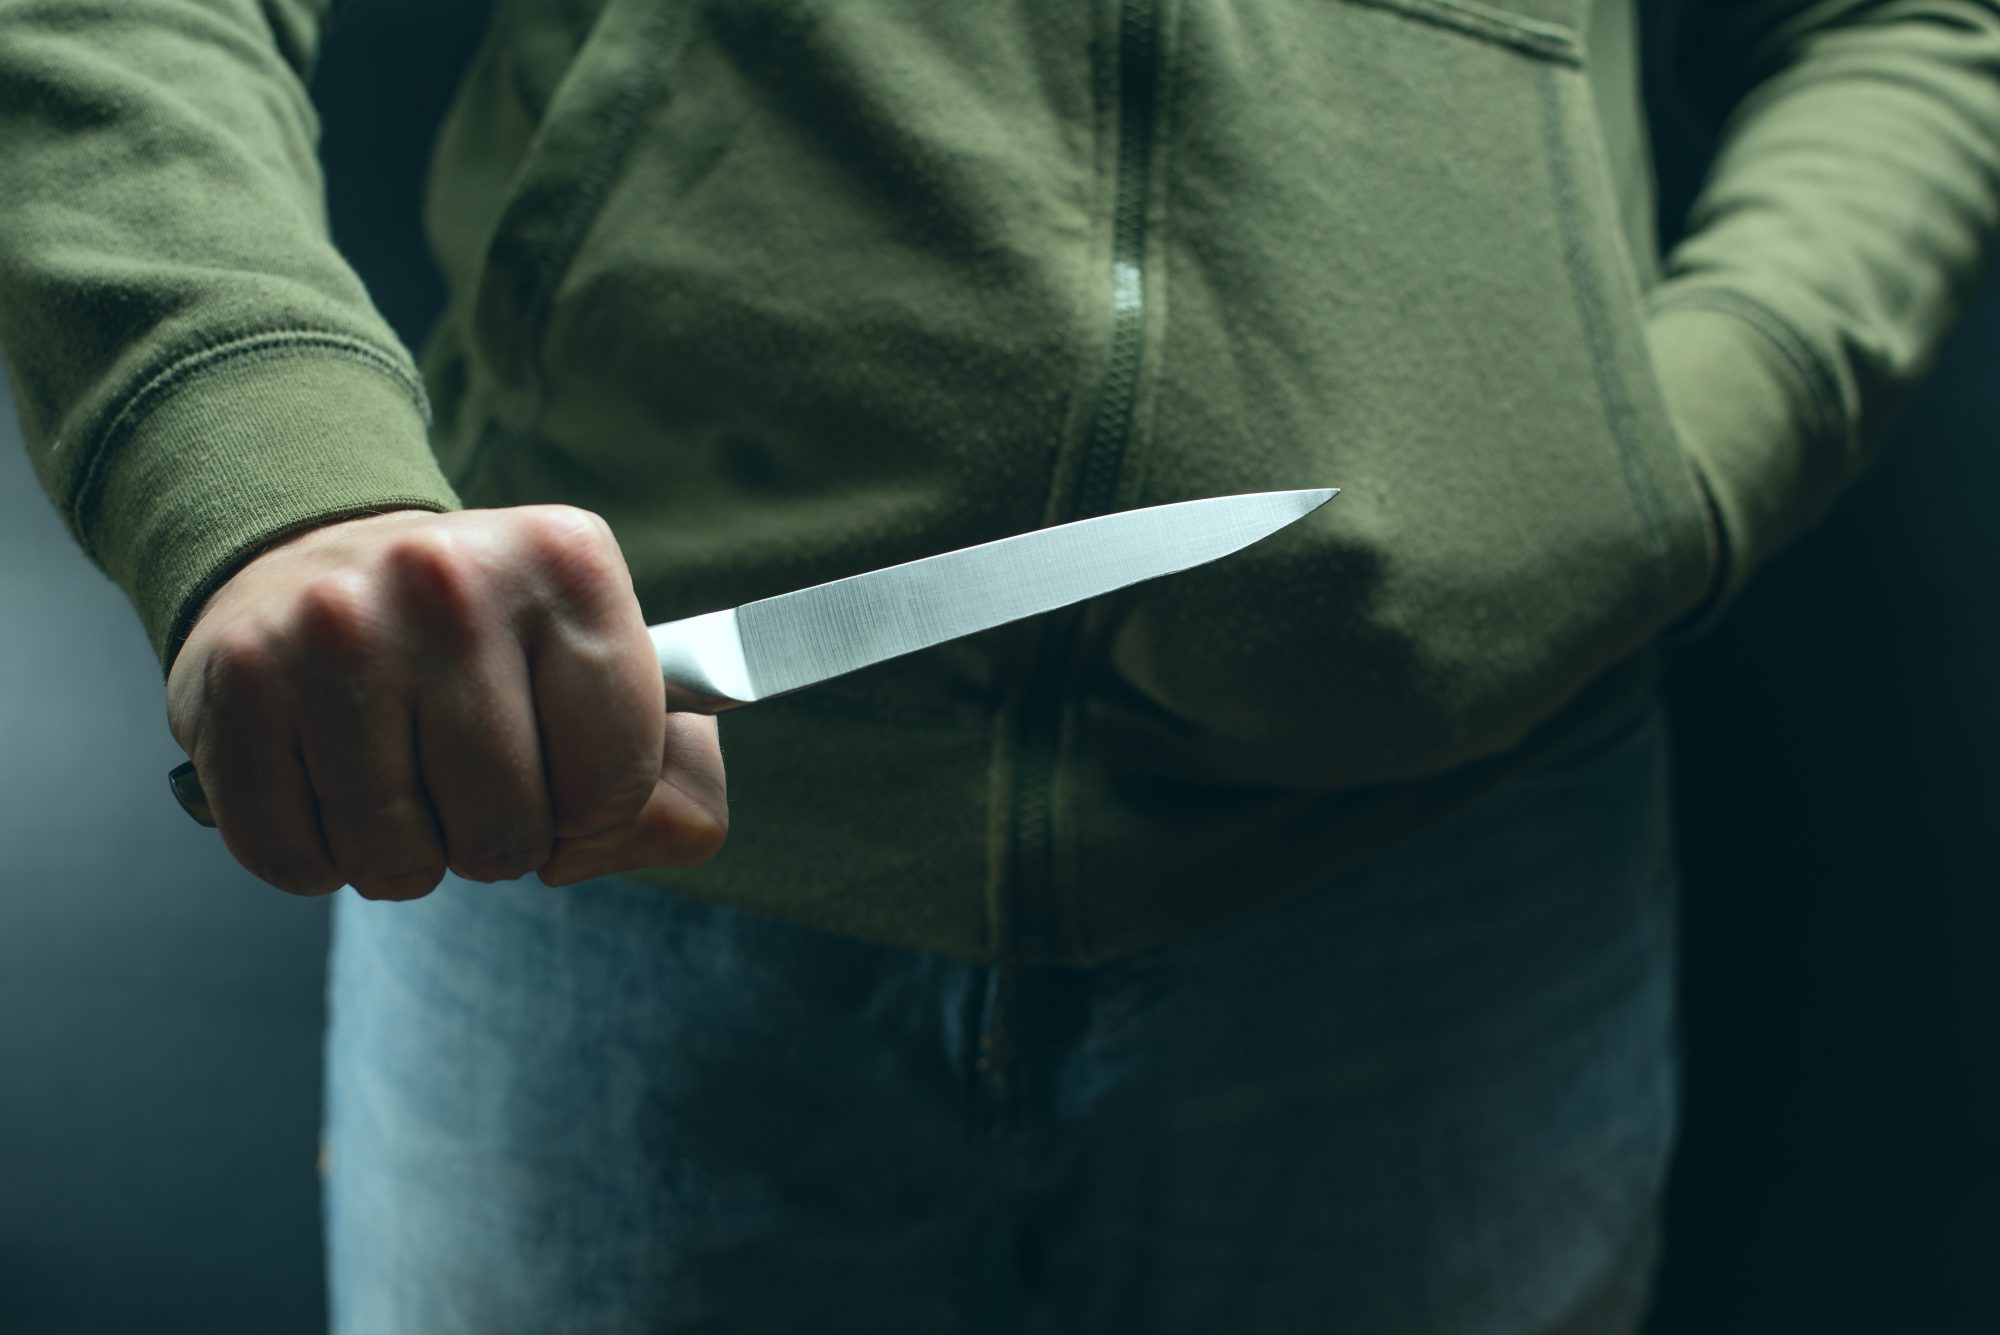 Ножевое фото. Человек замахивается ножом.